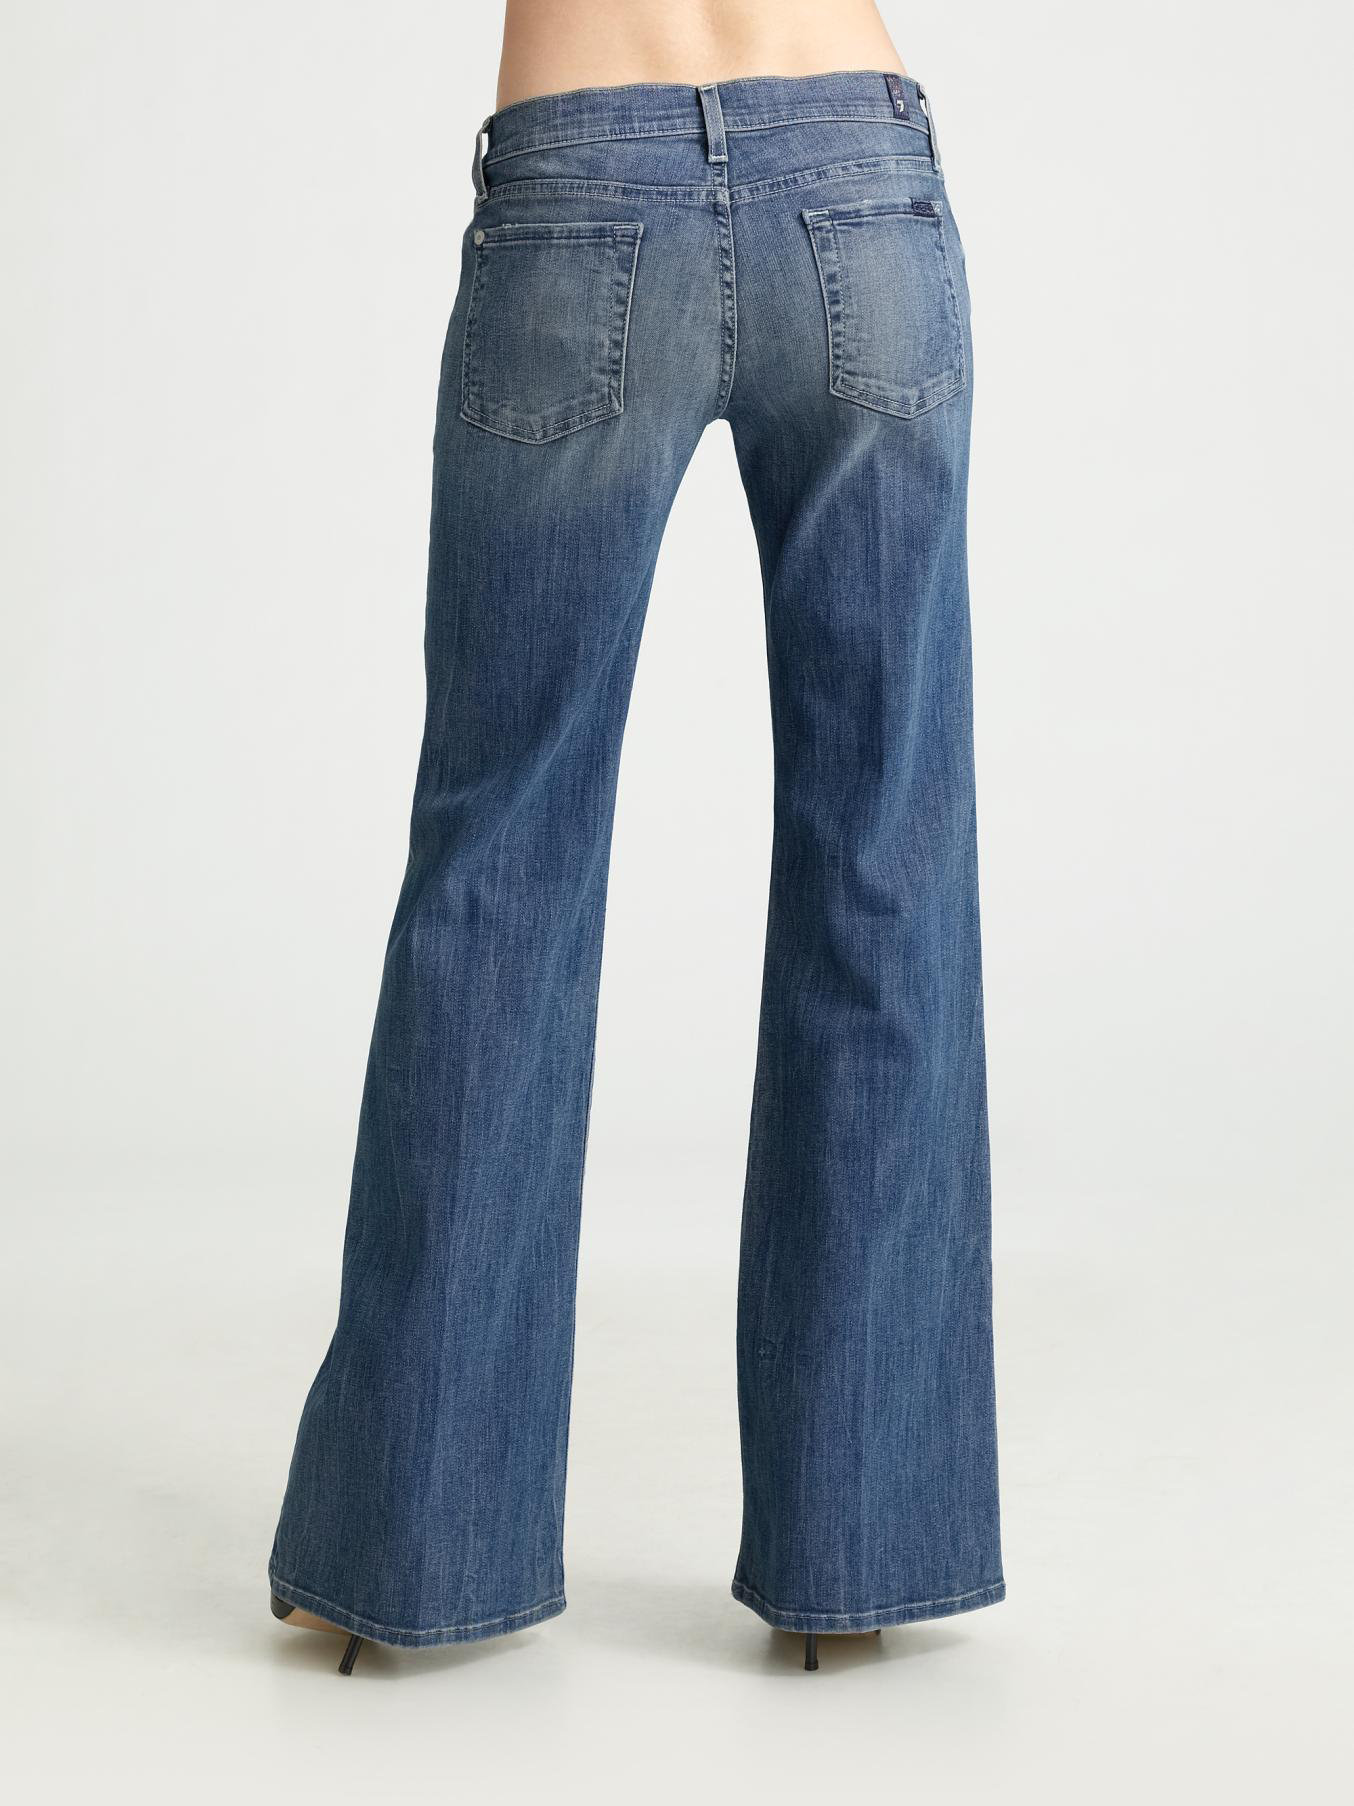 Lyst - 7 For All Mankind Dojo Trouser Jeans in Blue